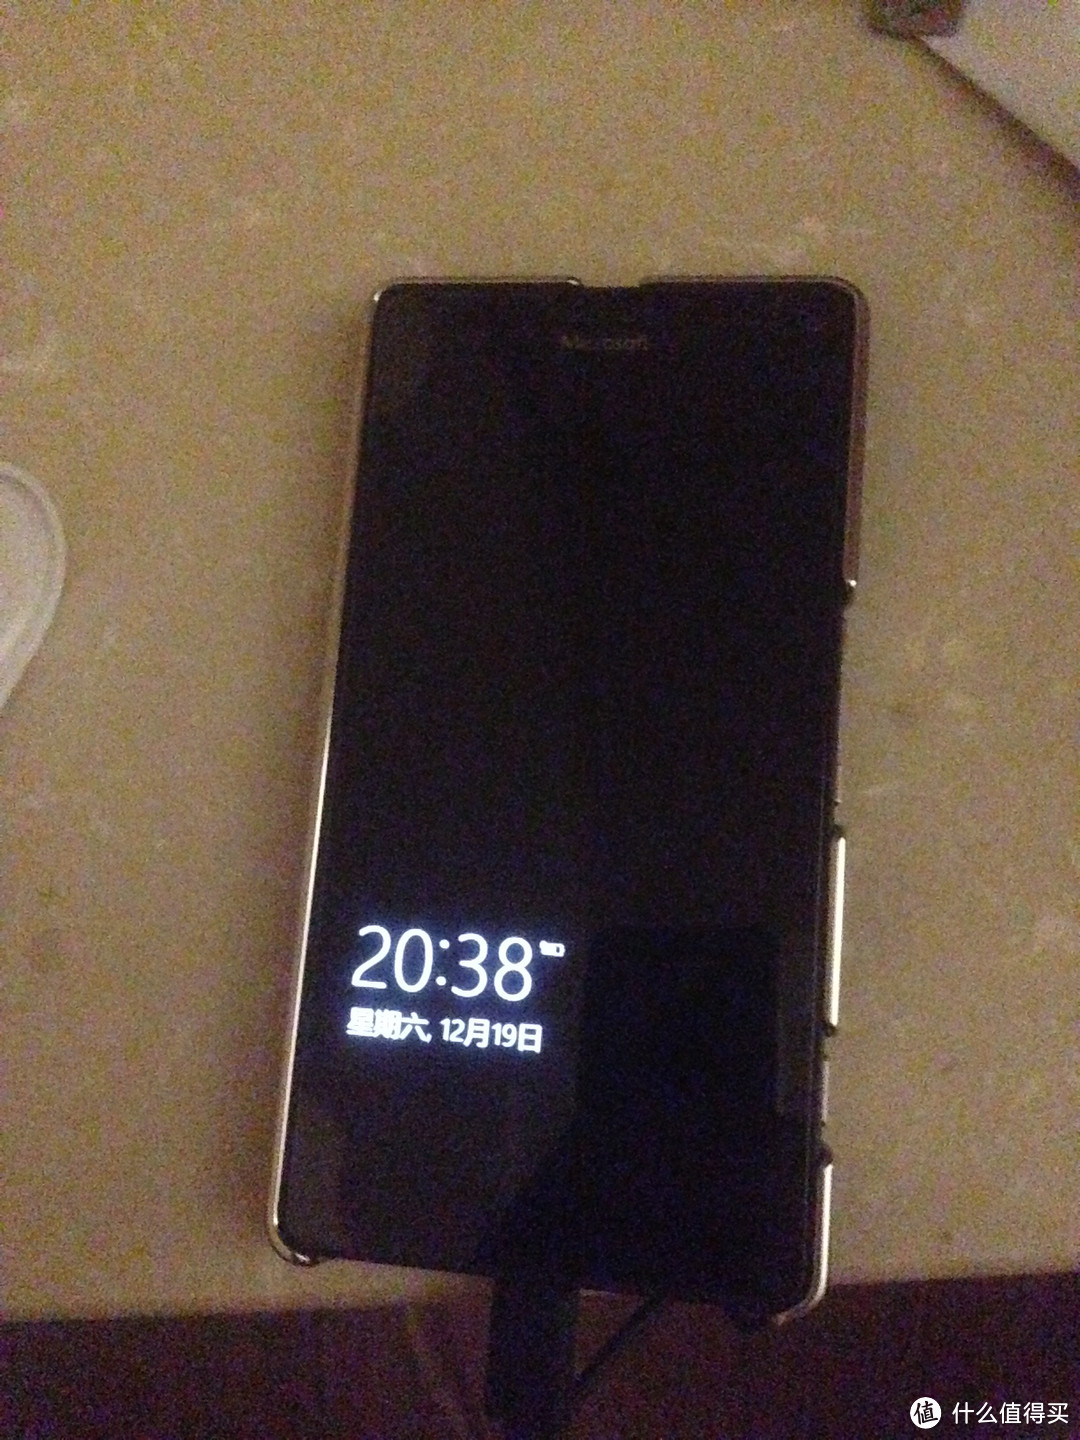 苦等许久的信仰充值 — Lumia 950 XL智享版 开箱